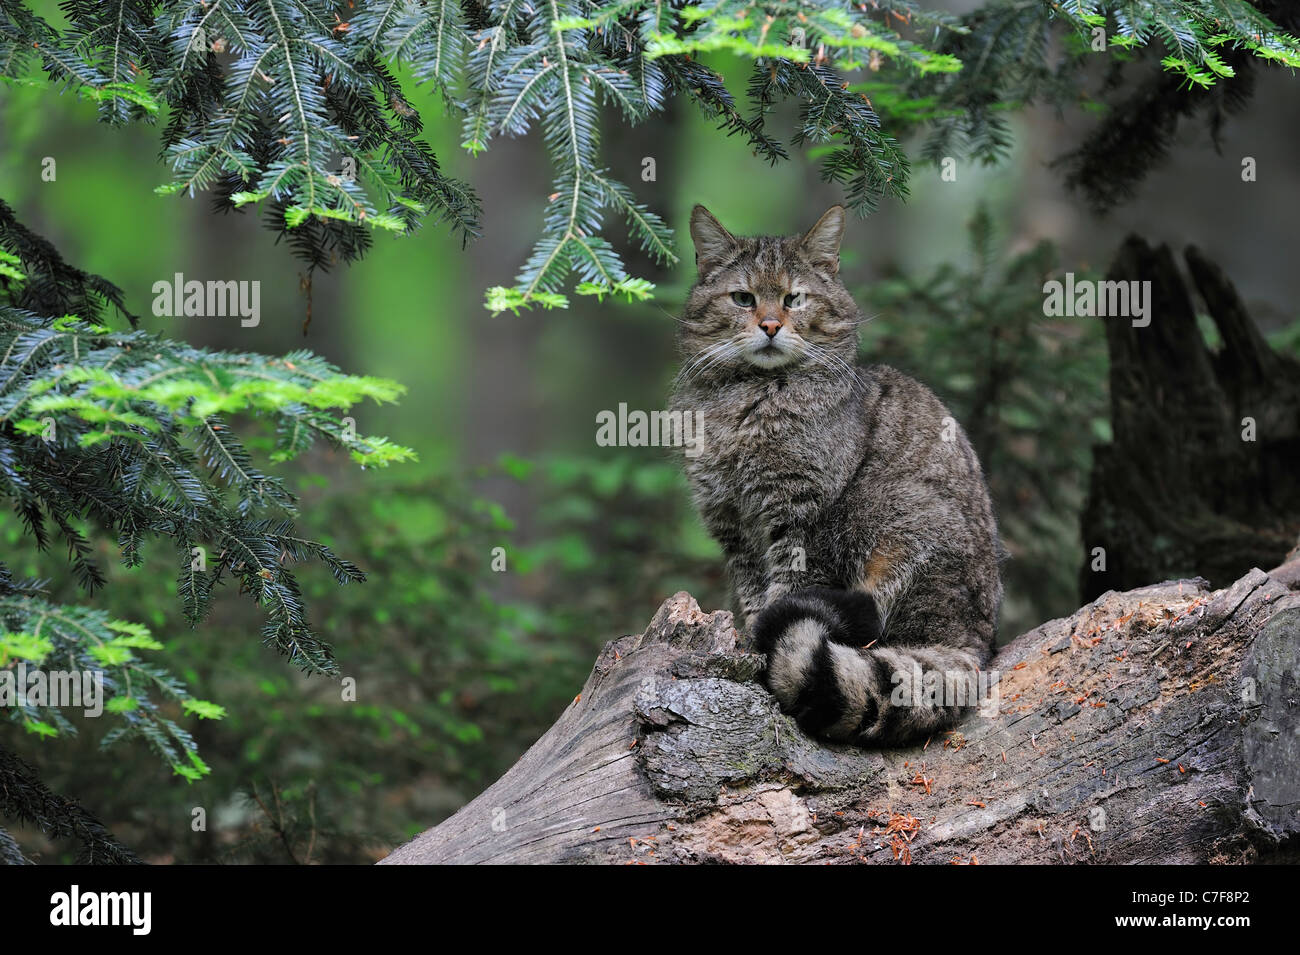 Wild cat (Felis silvestris) sitting on fallen tree trunk in pine forest Stock Photo